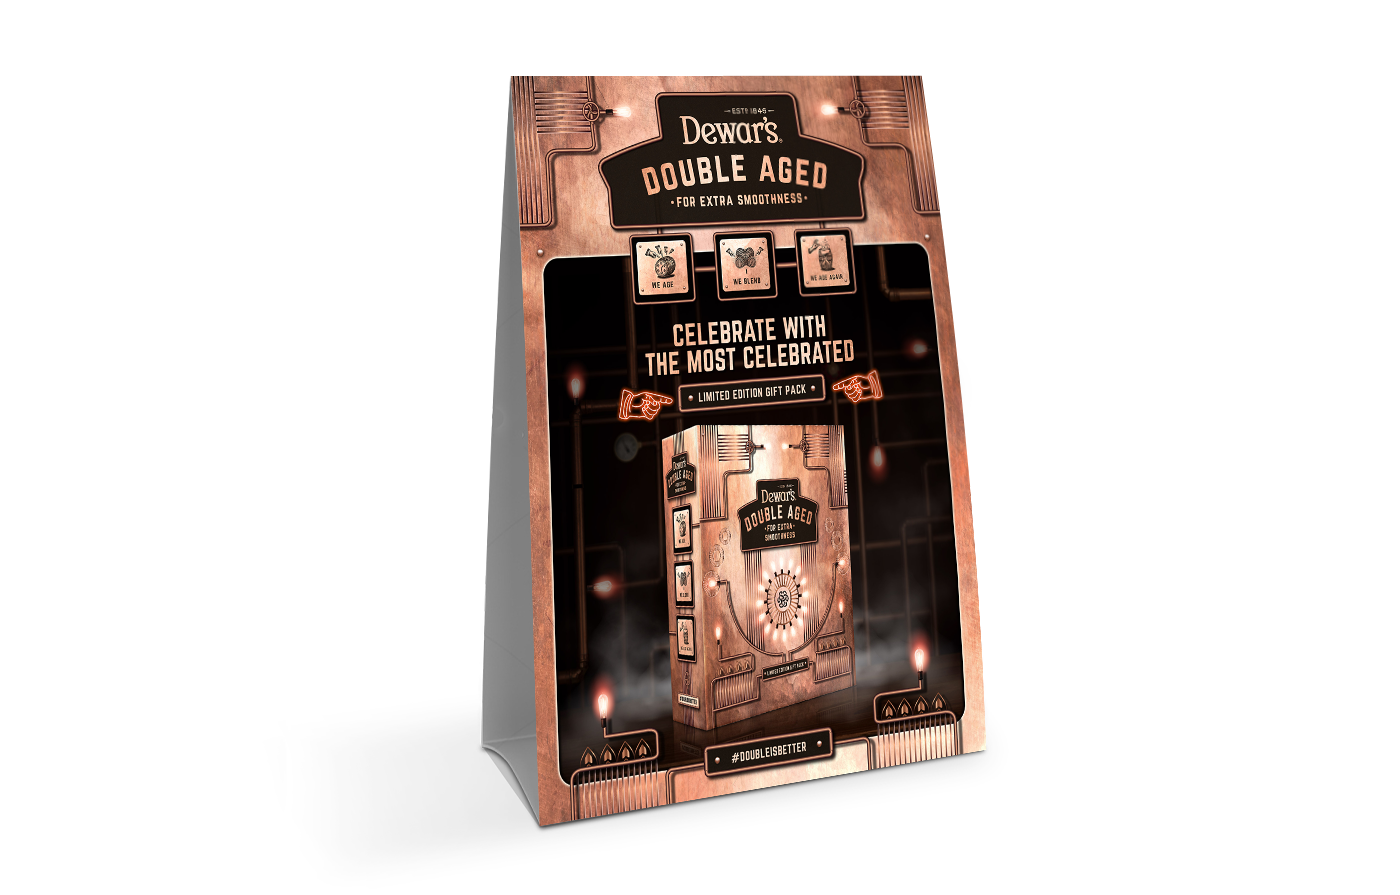 branding  packaging design posm alcohal celebration Dewar's gift pack bacardi limited edition